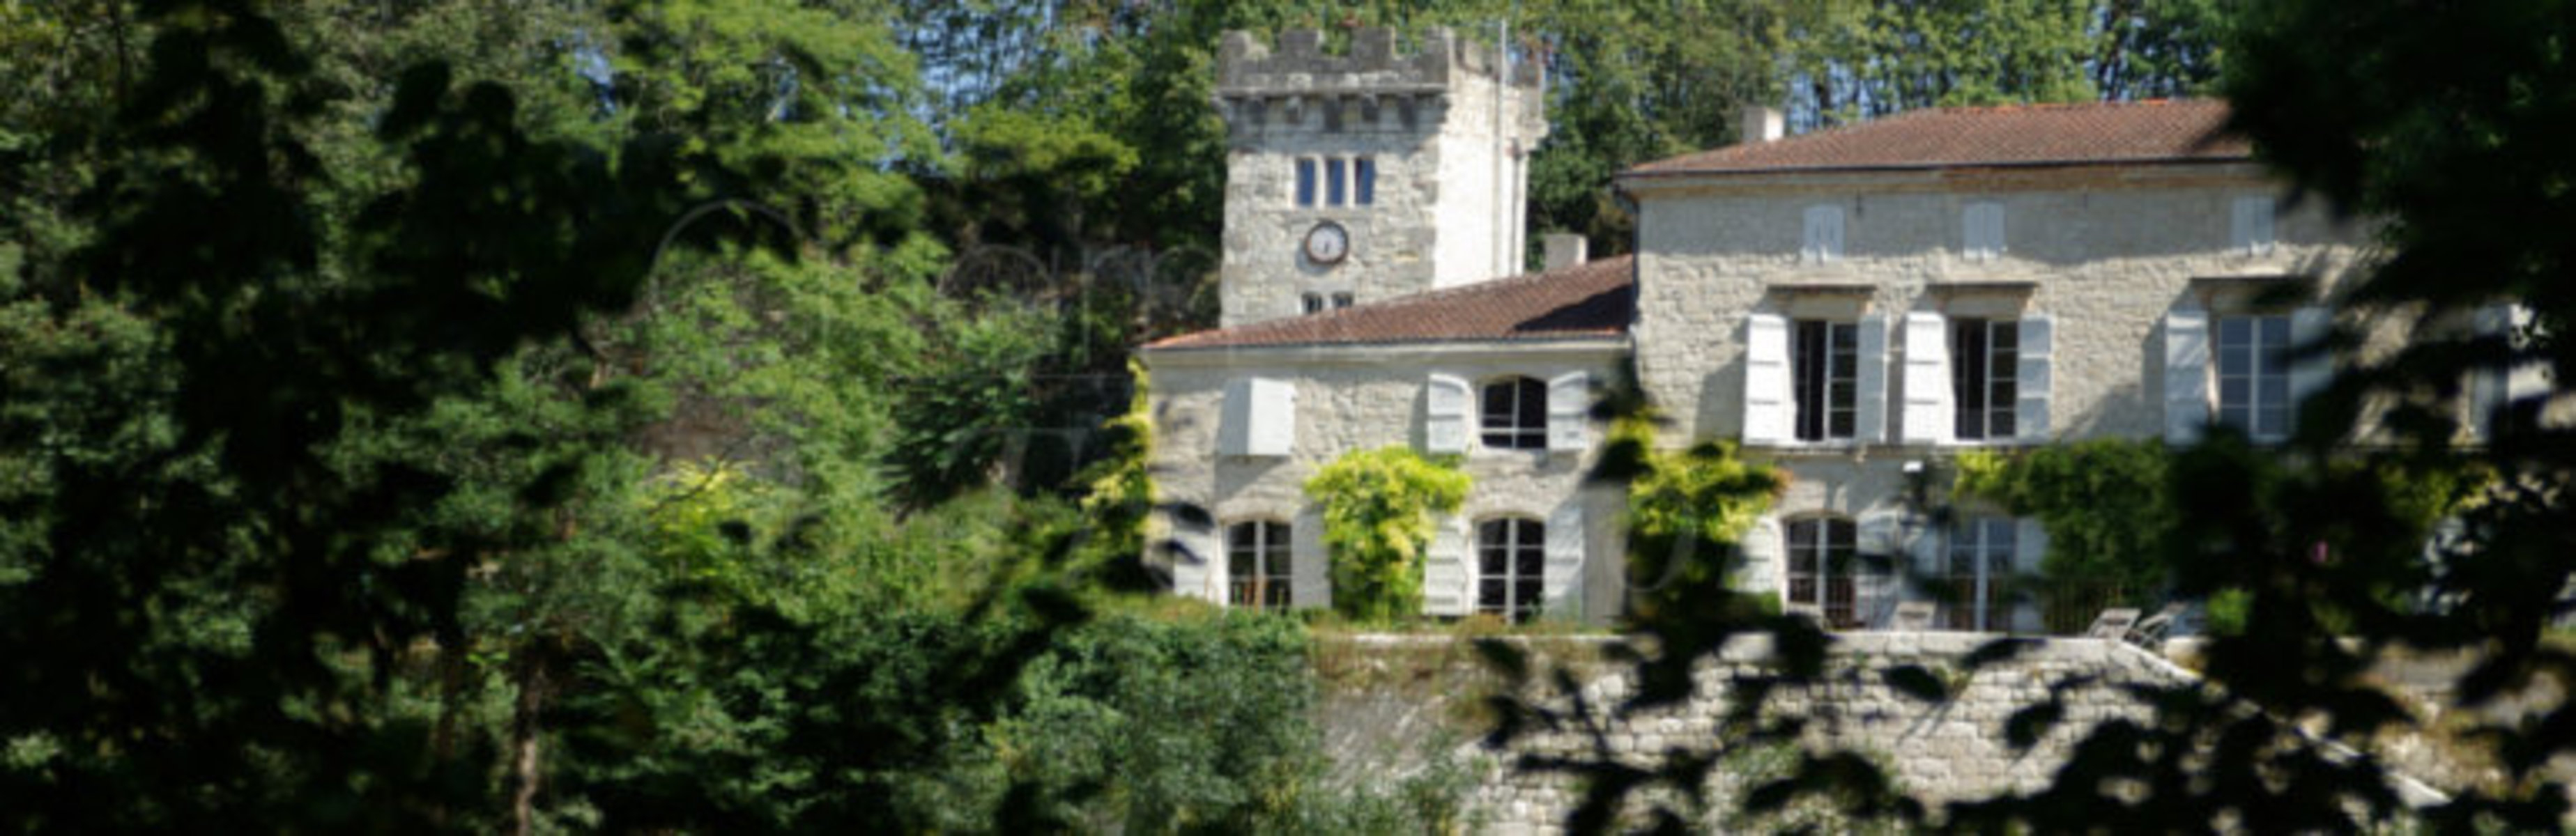 Château De Cambes : Chambre D'hote Pont-Du-Casse, Lot-Et-Garonne destiné Chambre D Hote Agen